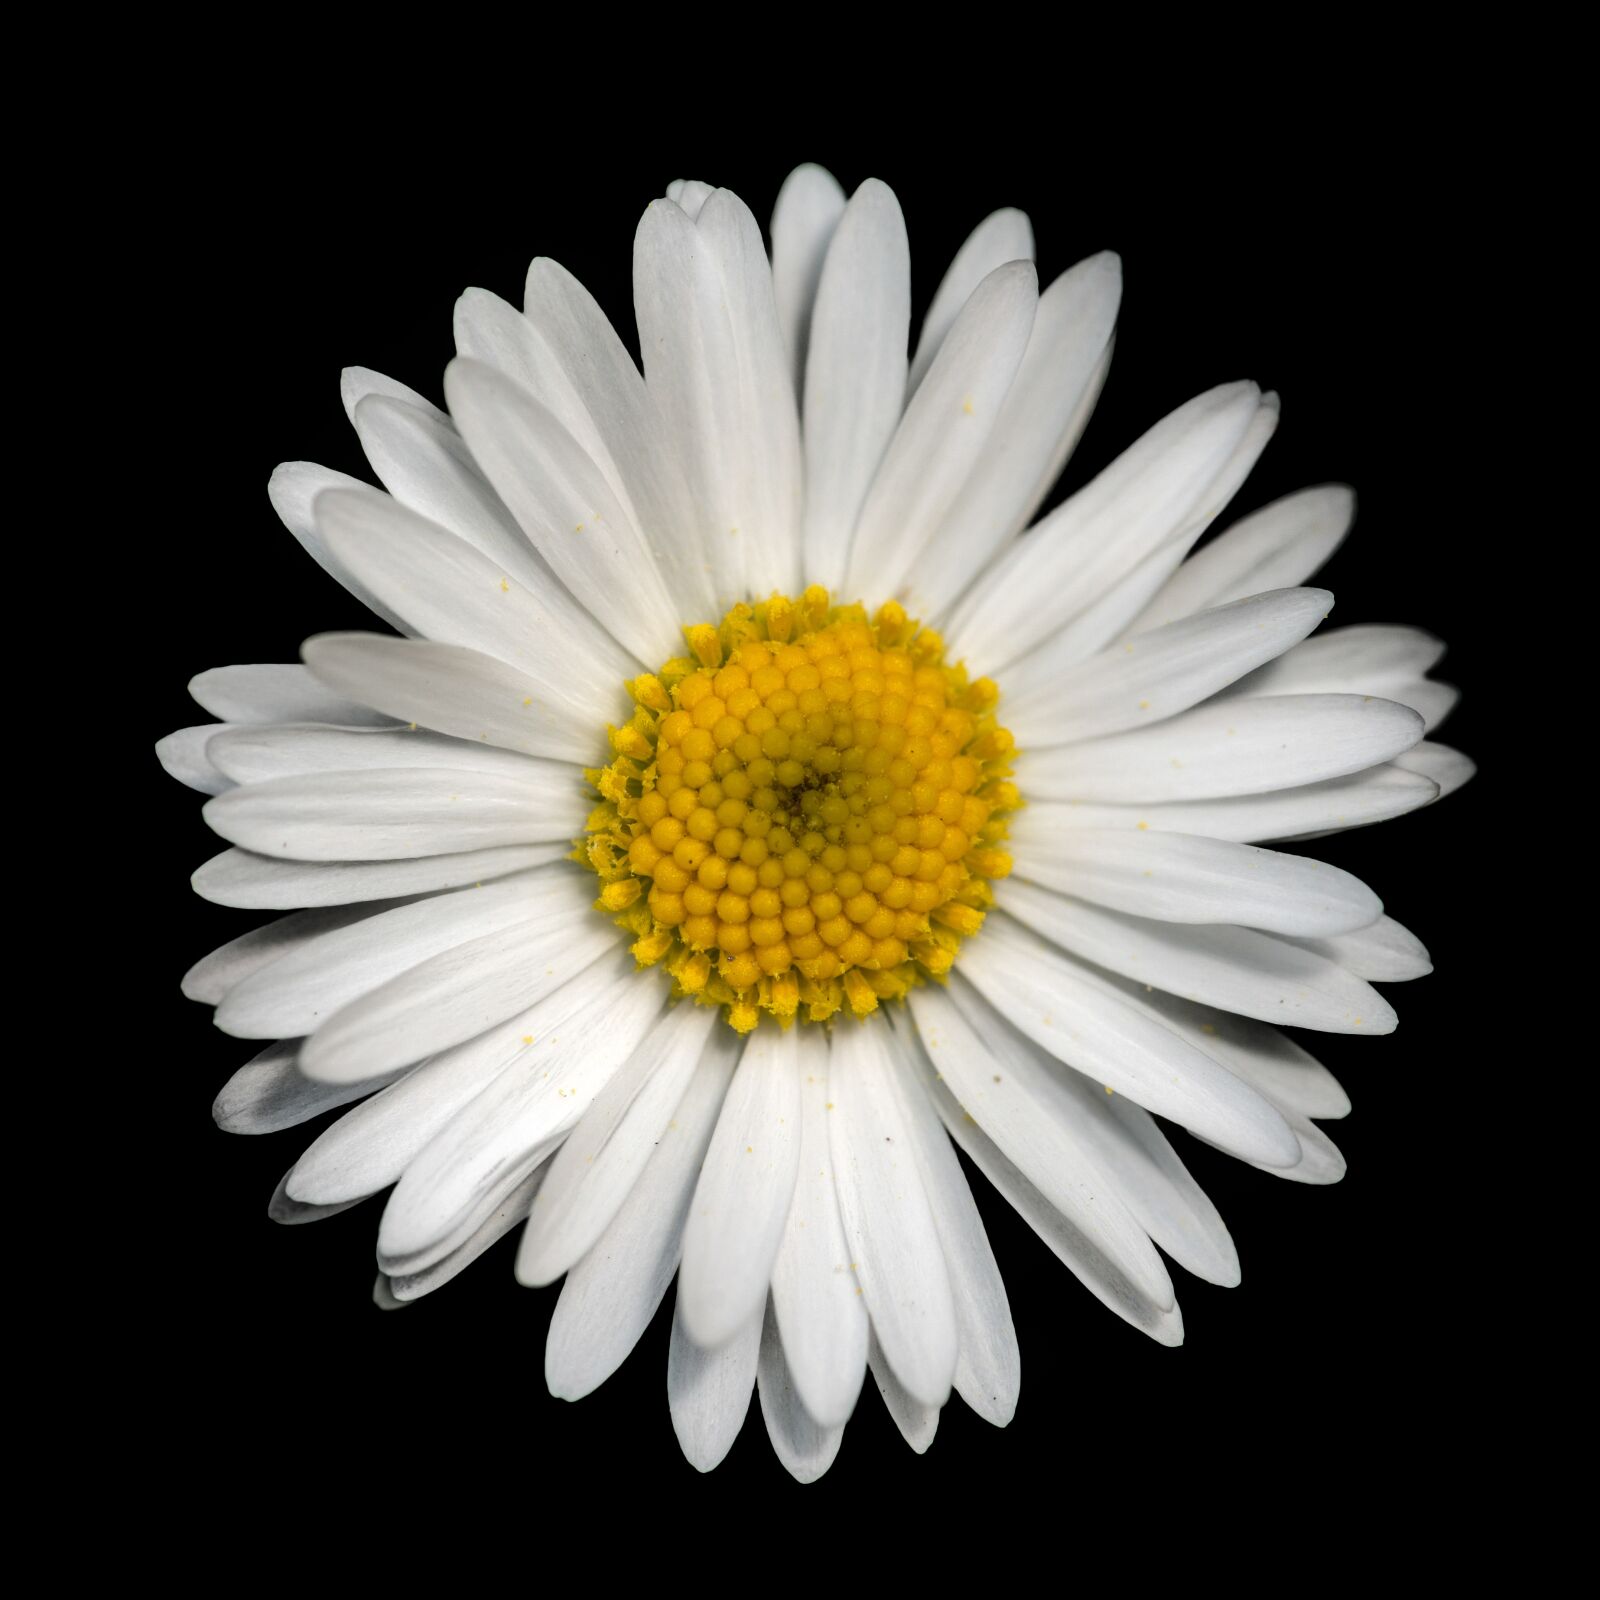 Nikon D800E sample photo. Daisy, flower, flowers photography